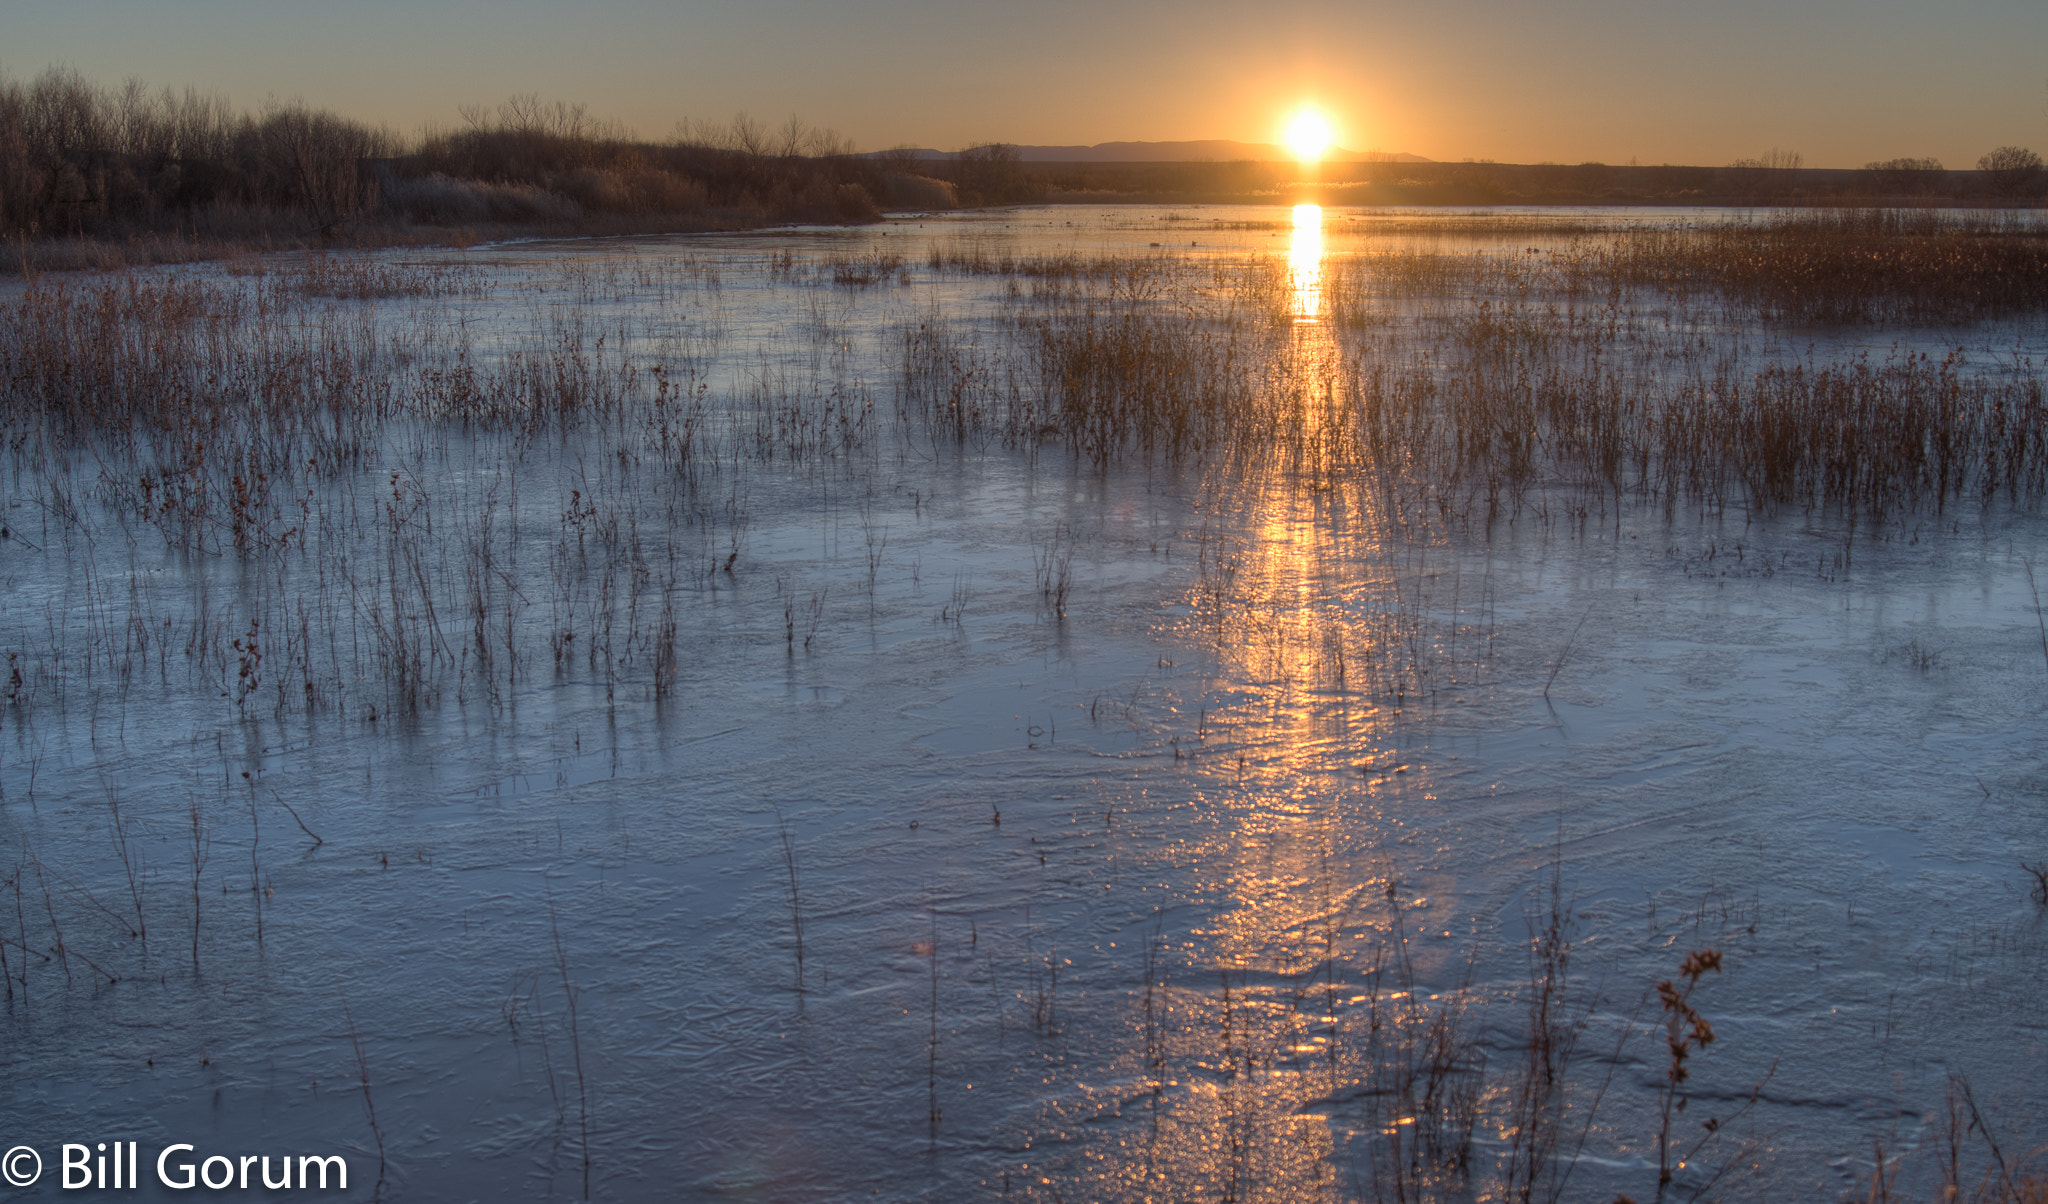 Nikon D500 + Nikon AF-S Nikkor 24-85mm F3.5-4.5G ED VR sample photo. Sunrise over a frozen marsh photography